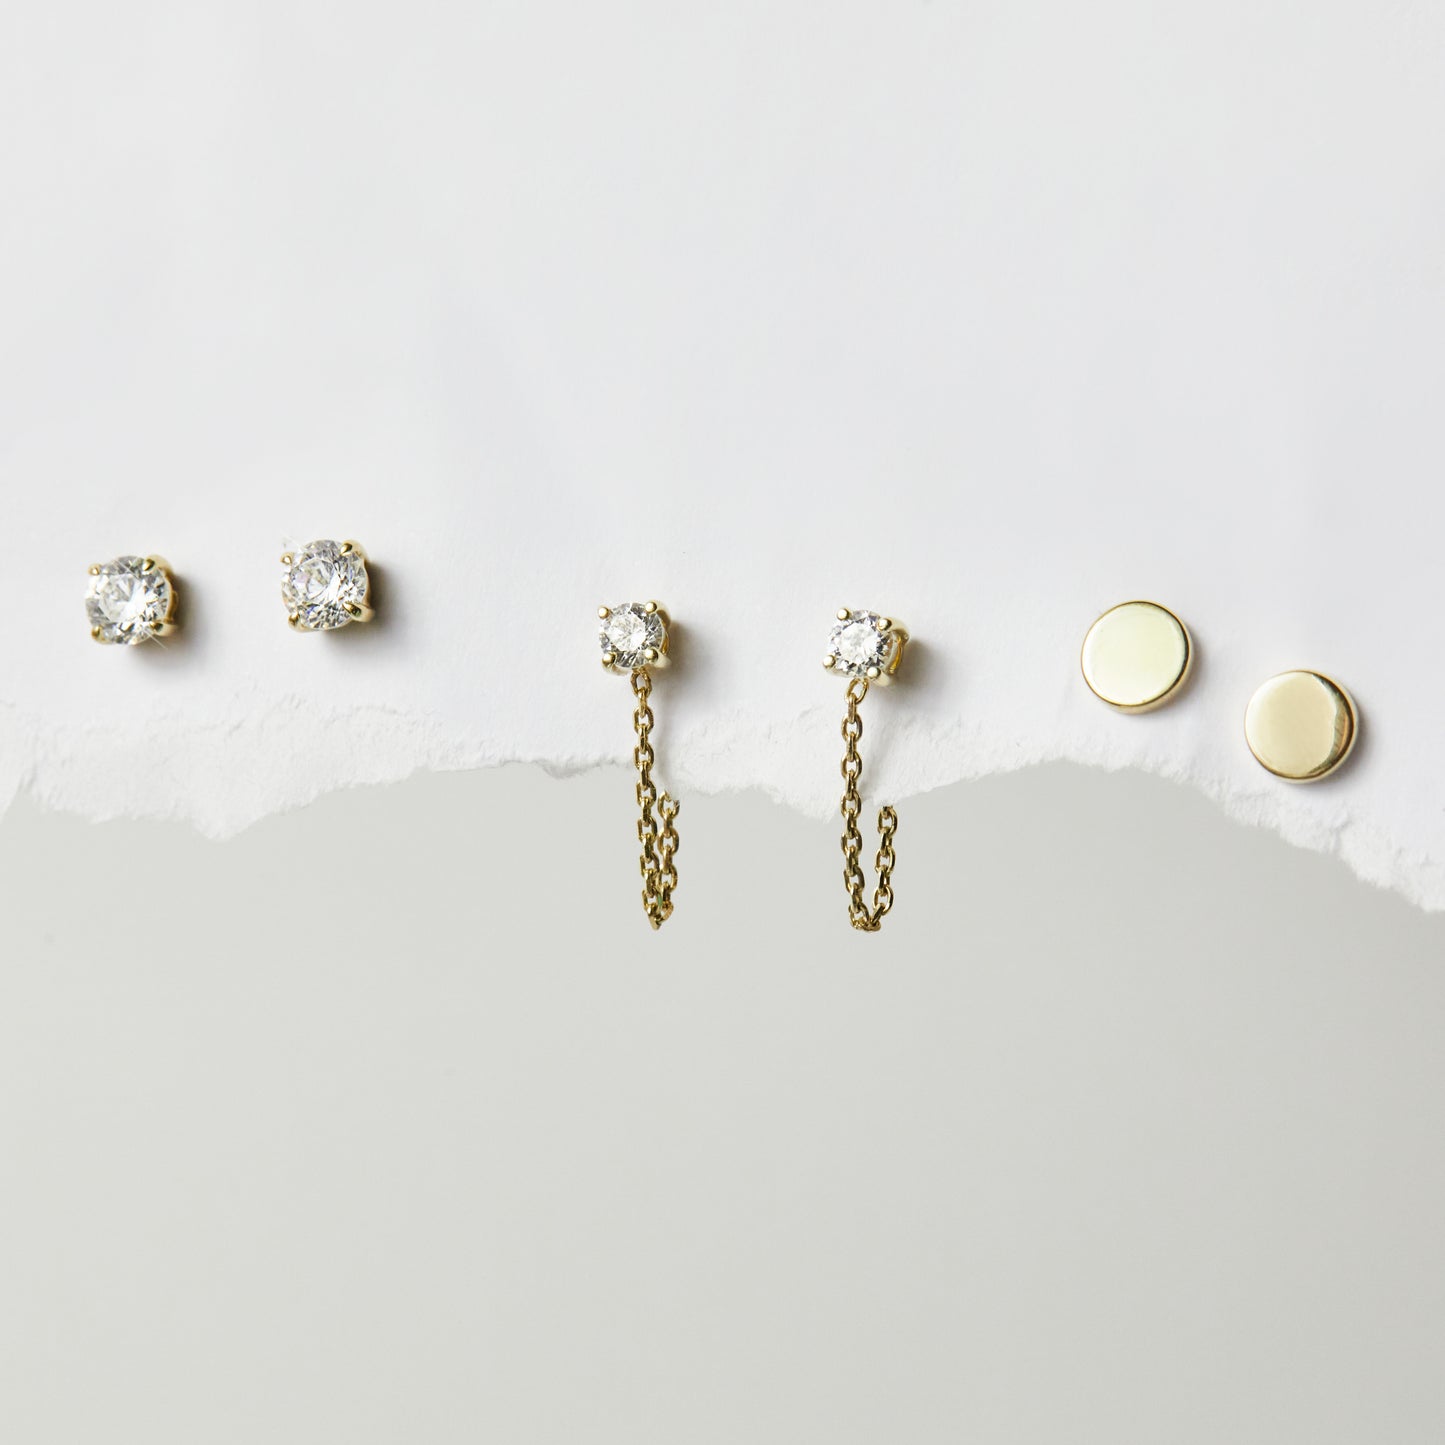 Cubic Zirconia Studs In 9k Solid Gold- PAIR - Earrings - Carrie Elizabeth